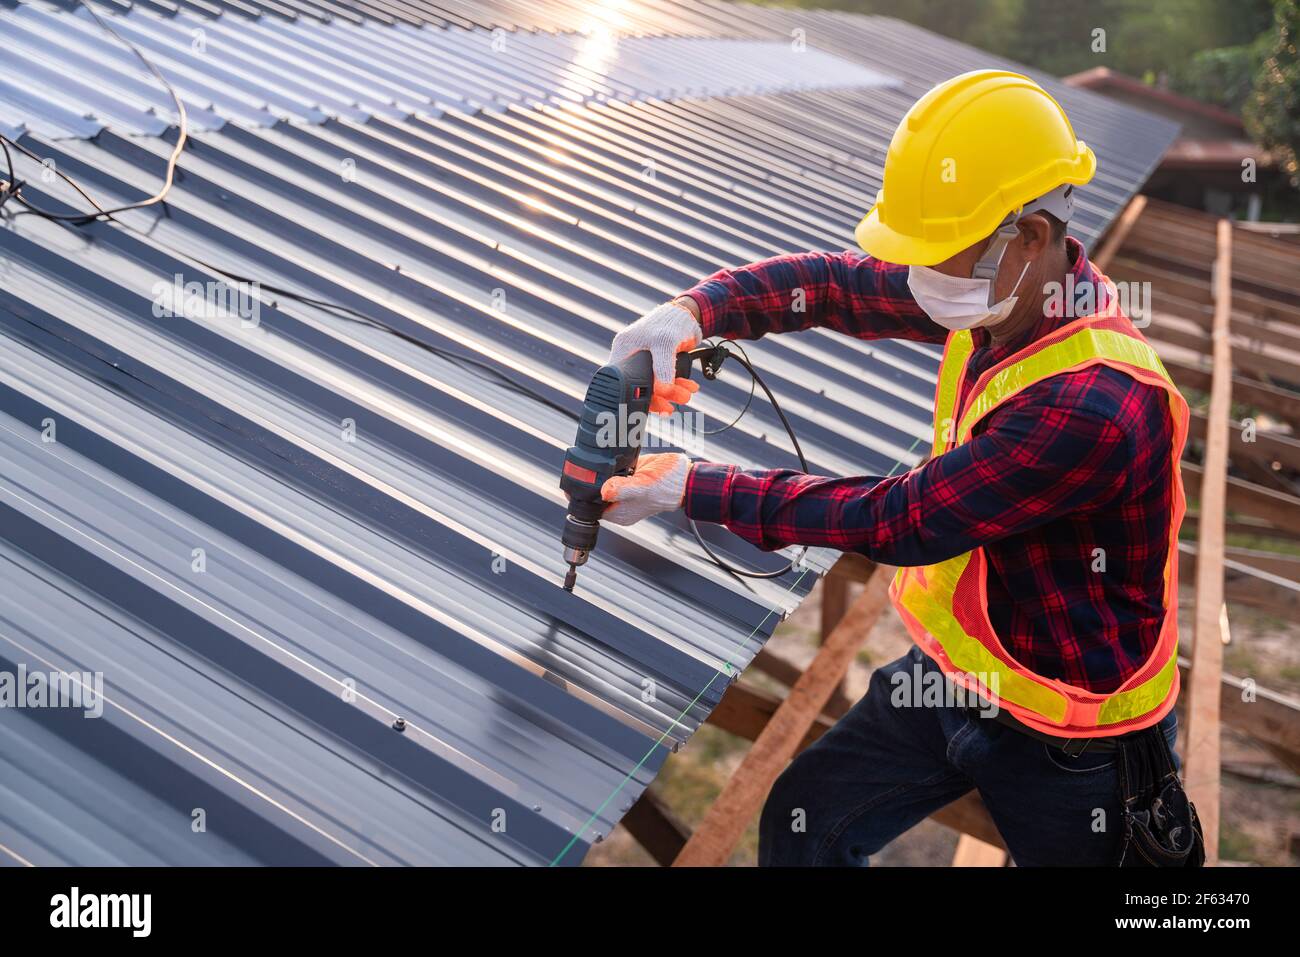 Draufsicht Bauarbeiter Sicherheitsverschleiß mit elektrischen Bohrwerkzeugen auf neuem Dach Metallblech installieren, Dachkonstruktion Konzept. Stockfoto